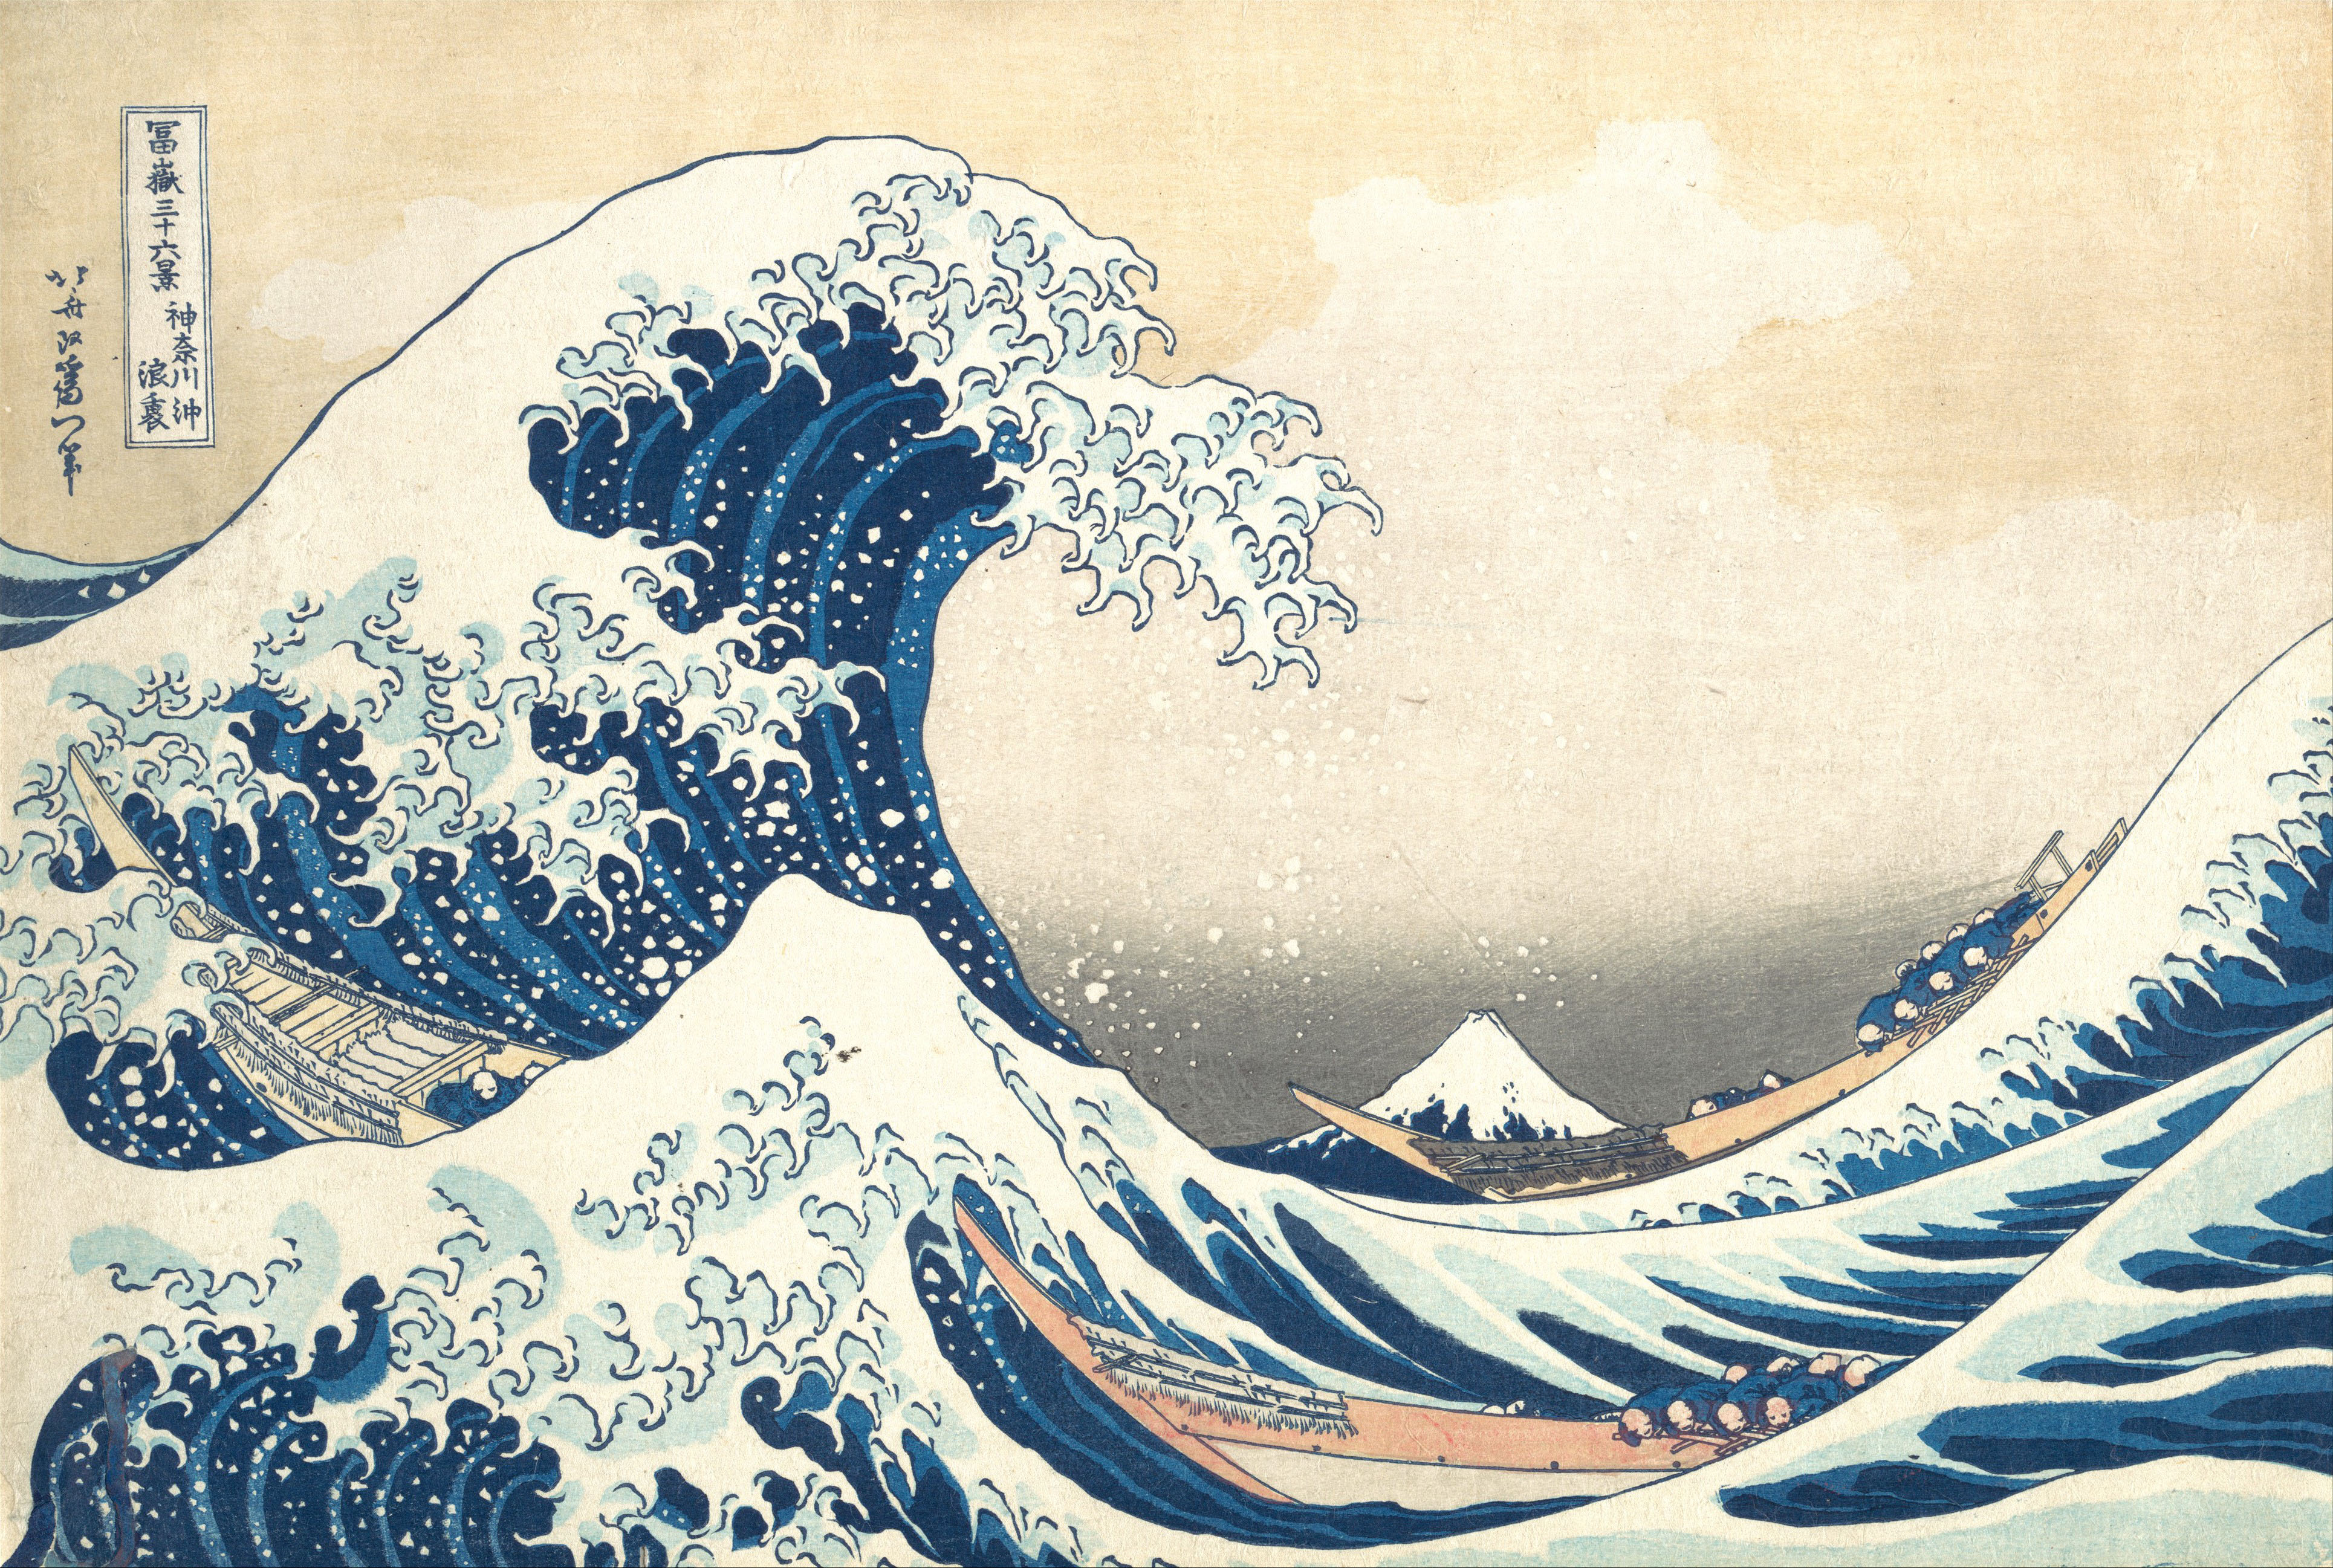 La historia de Hokusai: creador de La gran ola de Kanagawa